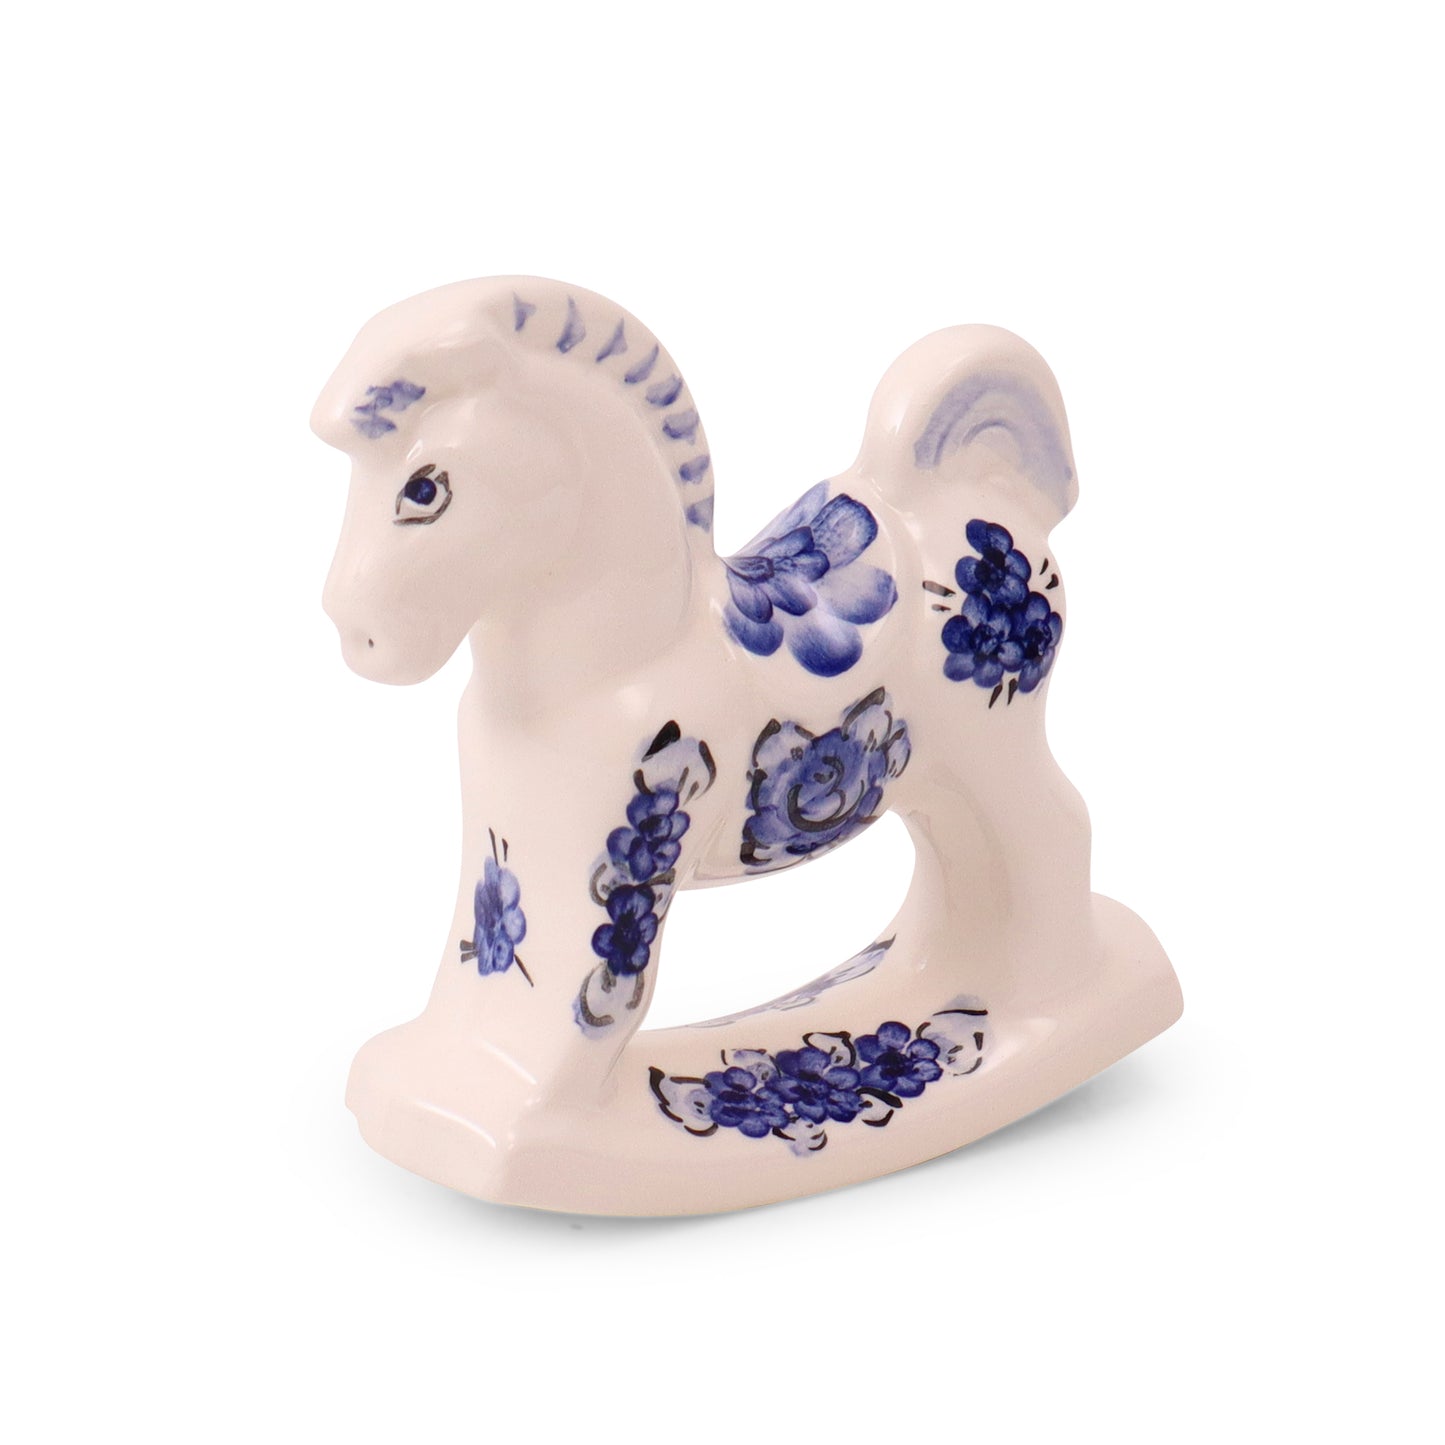 4"x4.5" Rocking Horse Figurine. Pattern: Cobalt